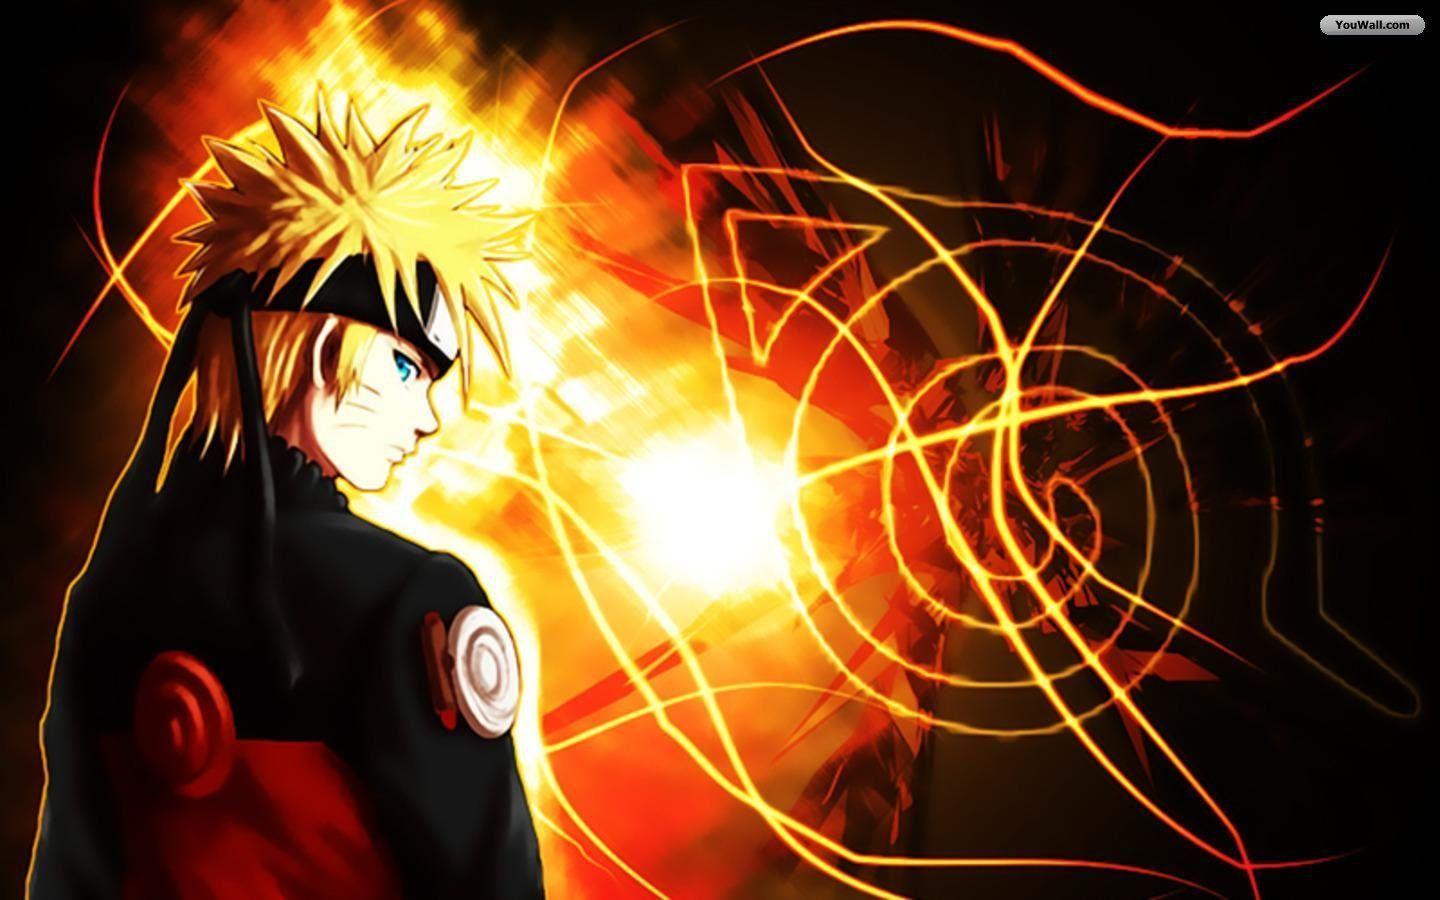 Animated Naruto Wallpapers: Tận hưởng thế giới Naruto bằng những bức ảnh nền động tuyệt đẹp. Hãy xem hình ảnh liên quan và khám phá về các tình tiết trong Naruto, nhân vật phức tạp và các kỹ năng ninja đầy ấn tượng, tất cả sẽ được thể hiện trong những bức ảnh nền động hoàn hảo này.